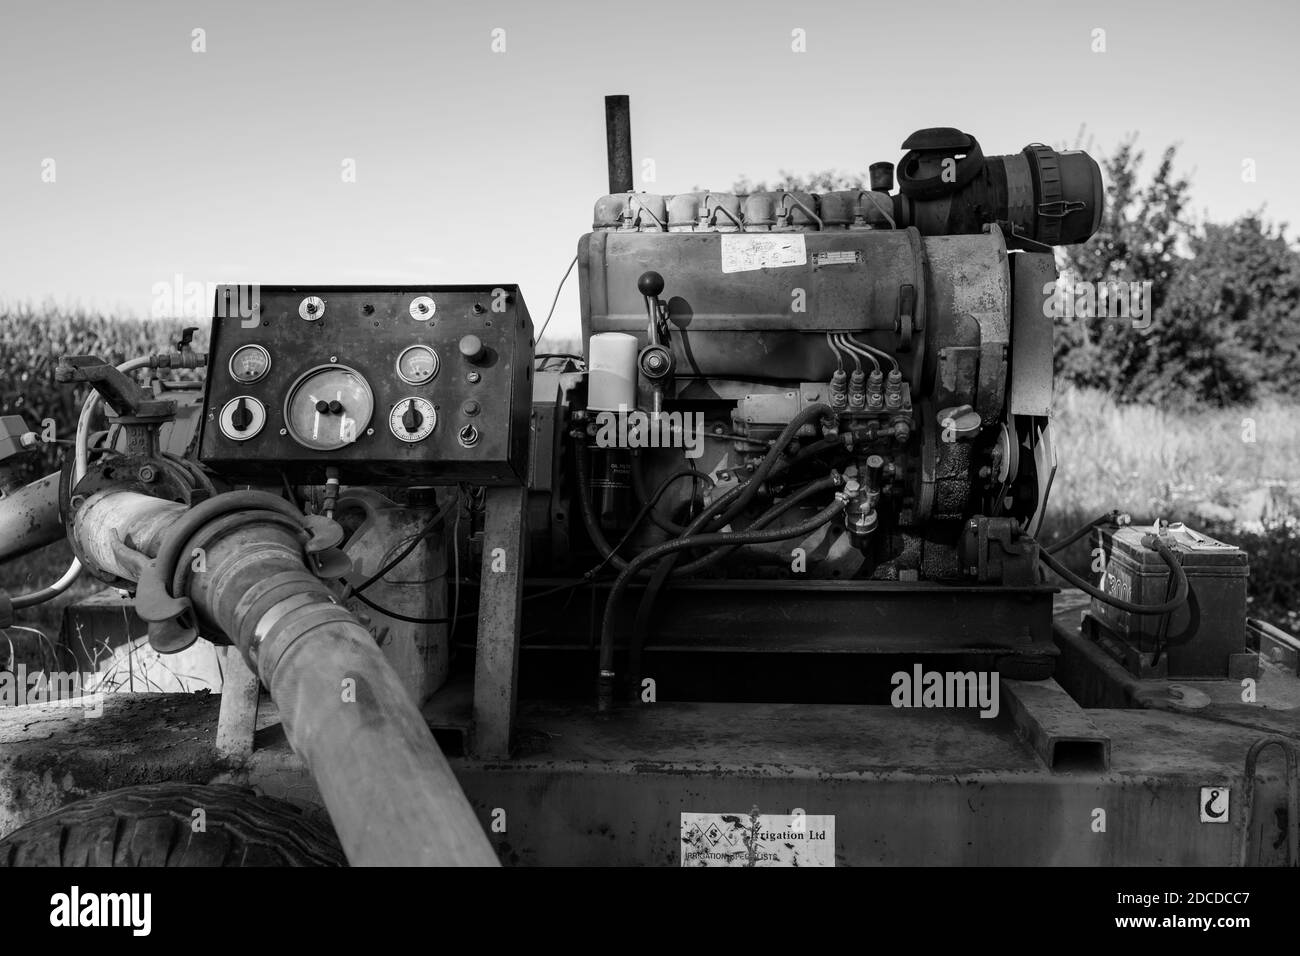 DEUTZ Dieselmotor auf einem Bauernhof zur Bewässerung Pumpen Wasser Stockfoto